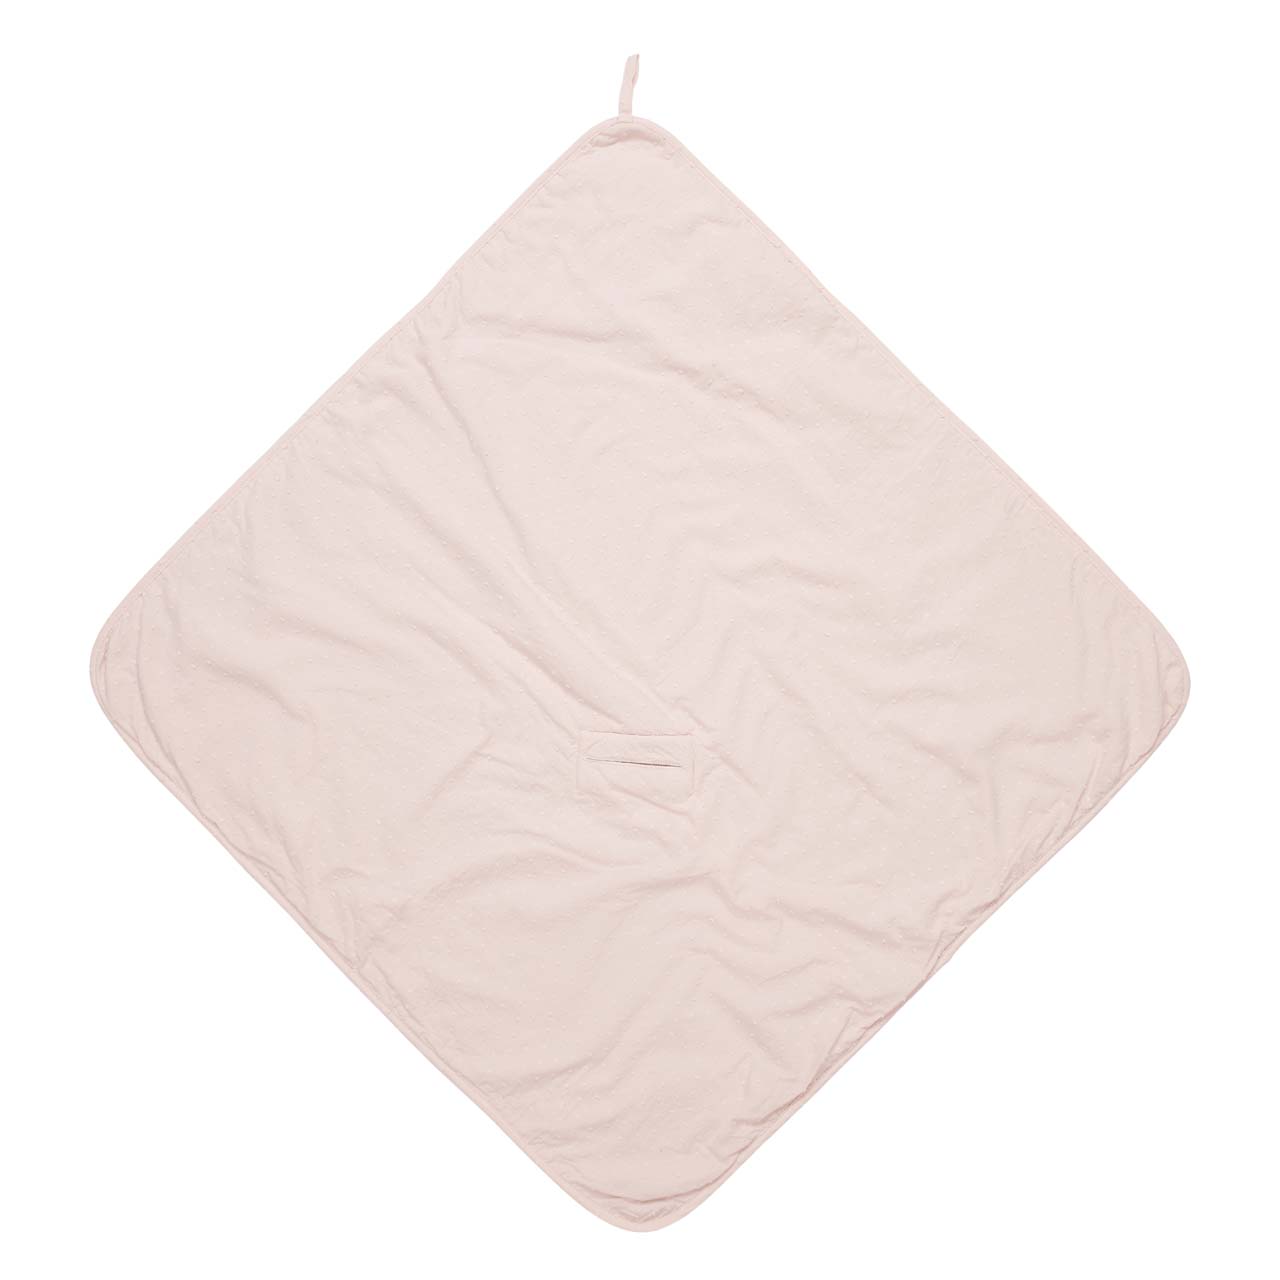 Wrap towel Napa blush